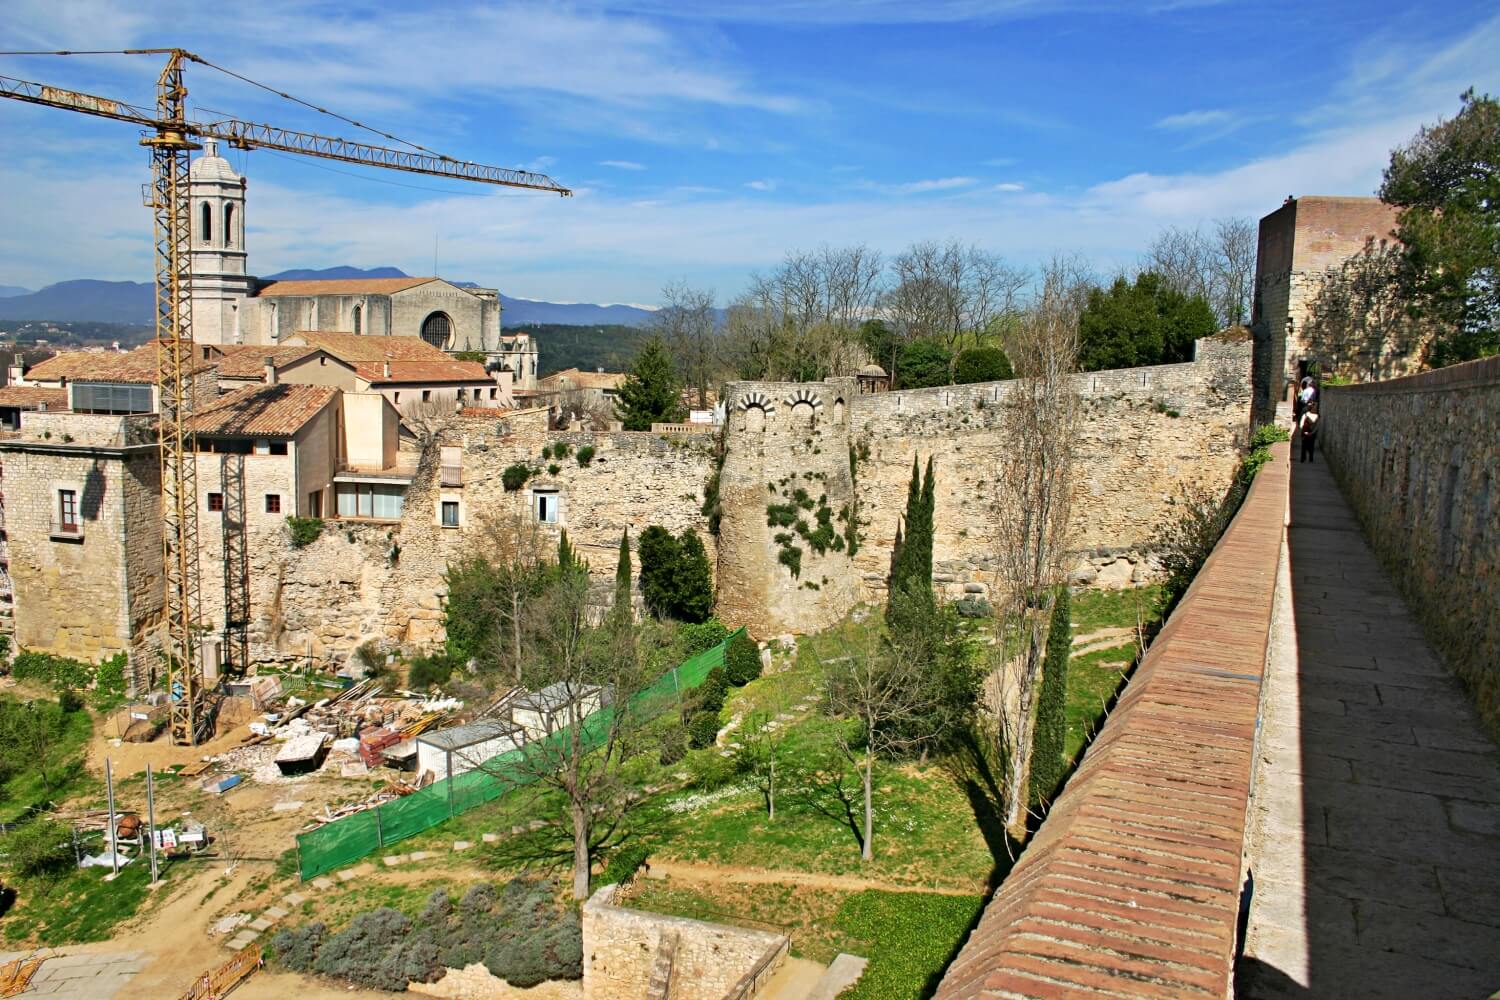 Walls of Girona